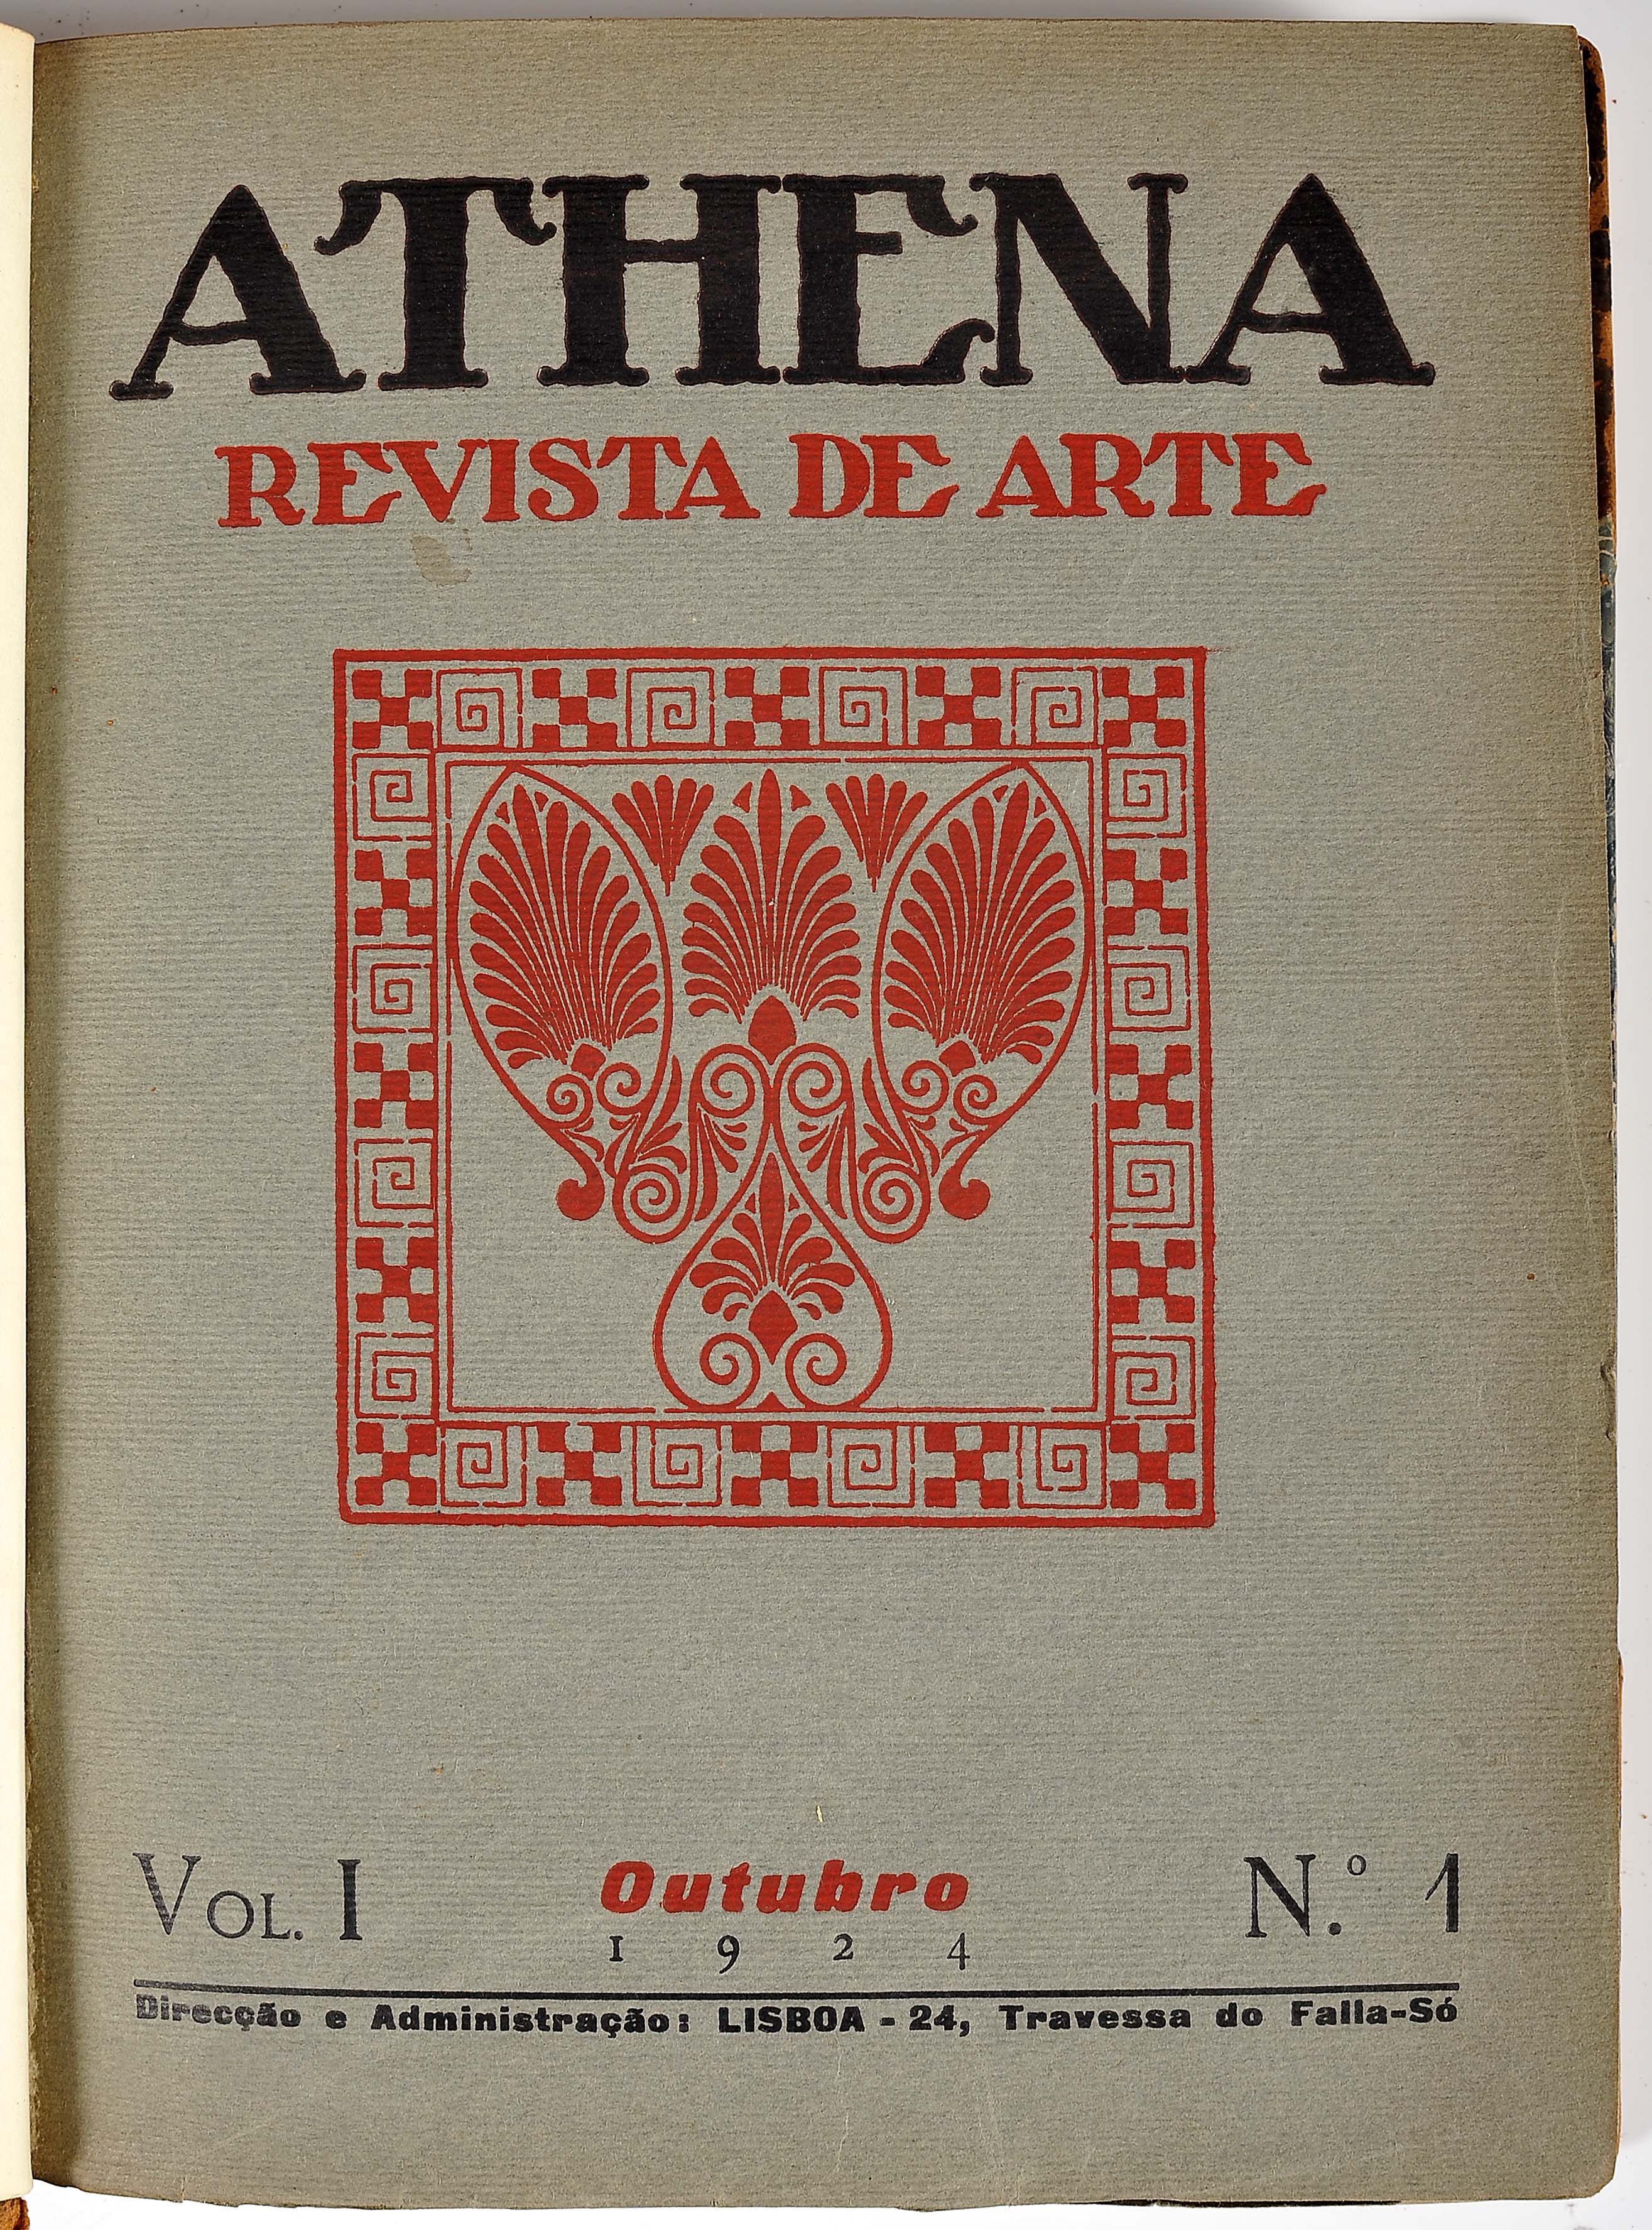 ATHENA: revista de arte / directores Fernando Pessoa; Ruy Vaz.- Vol. I, nº 1 a nº 5 (Outubro de 1924 - Image 3 of 6